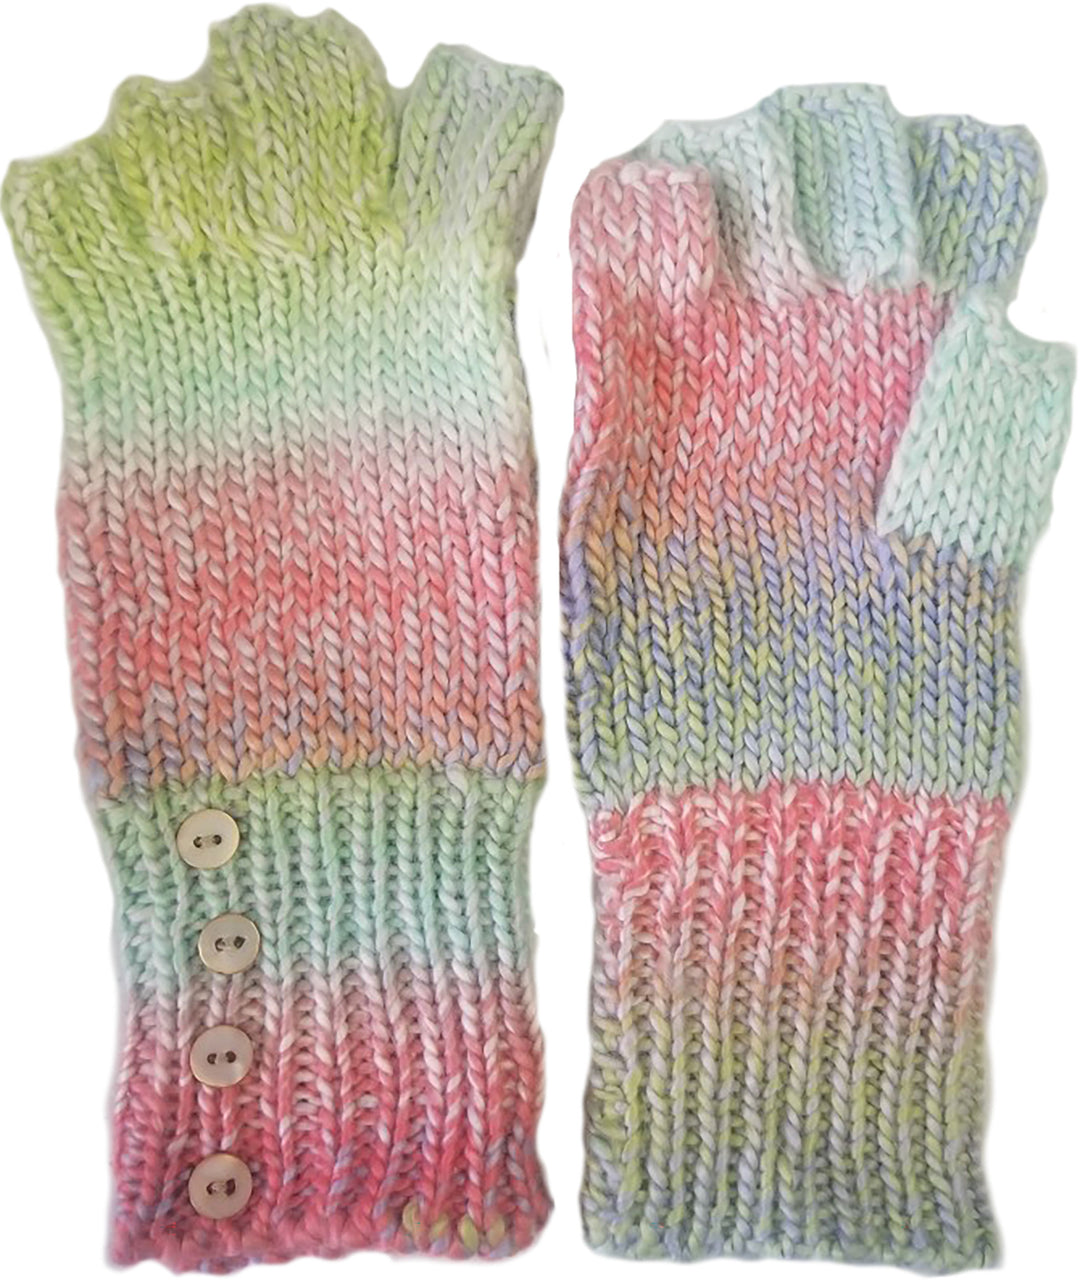 Space Dye Knit Fingerless Glove